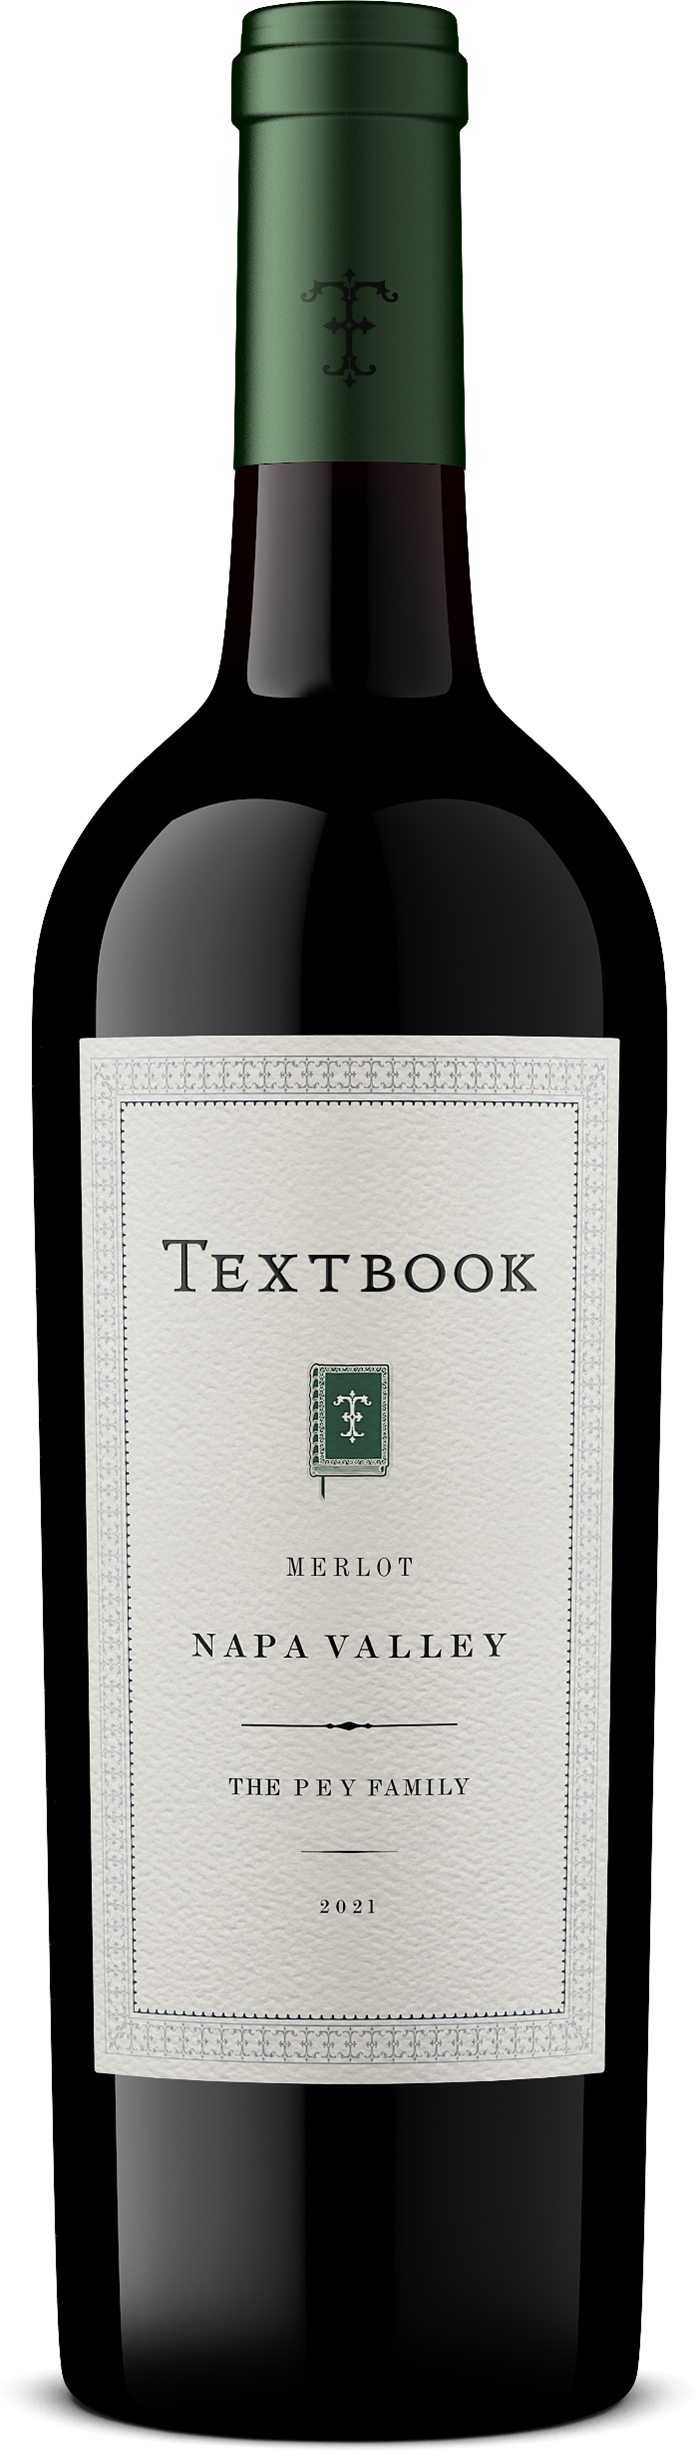 Textbook Napa Valley Merlot 2021 - bottle